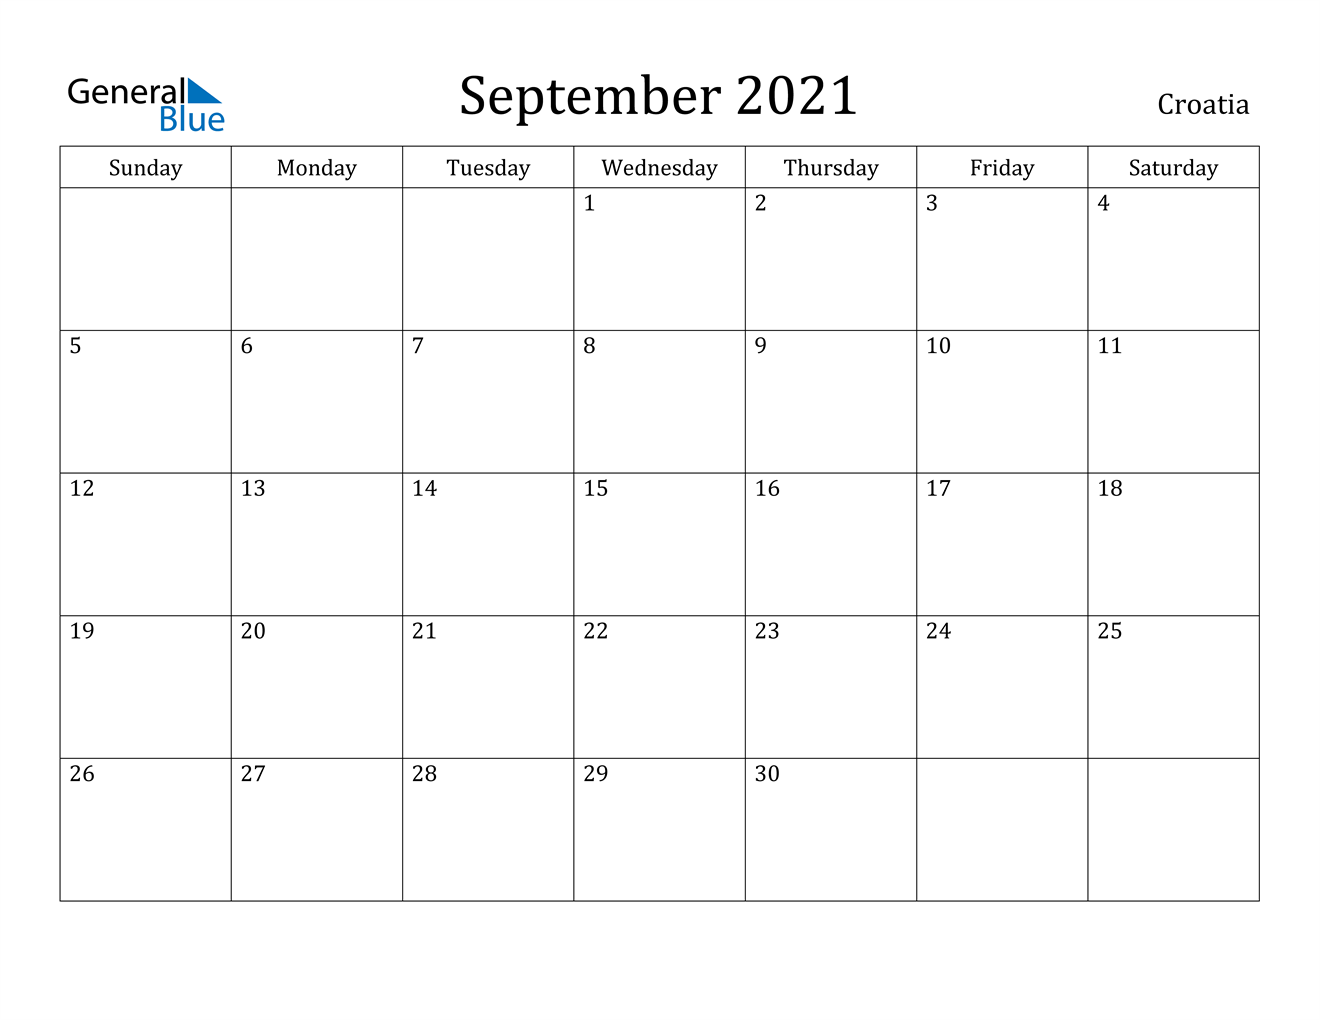 September 2021 Calendar - Croatia